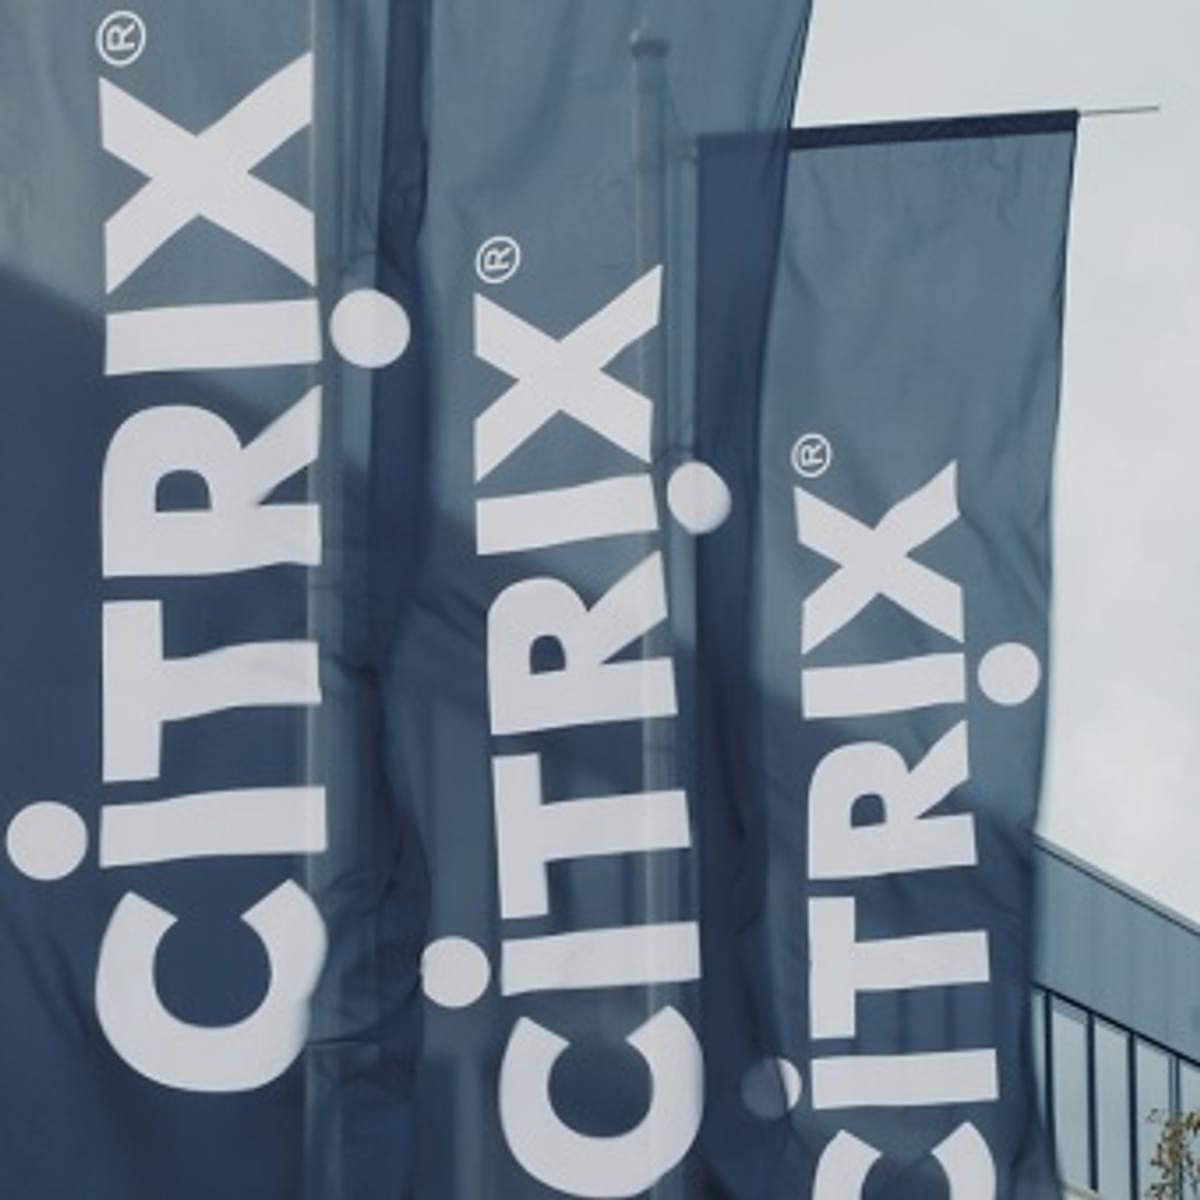 Citrix vereenvoudigt app levering en beveiliging image